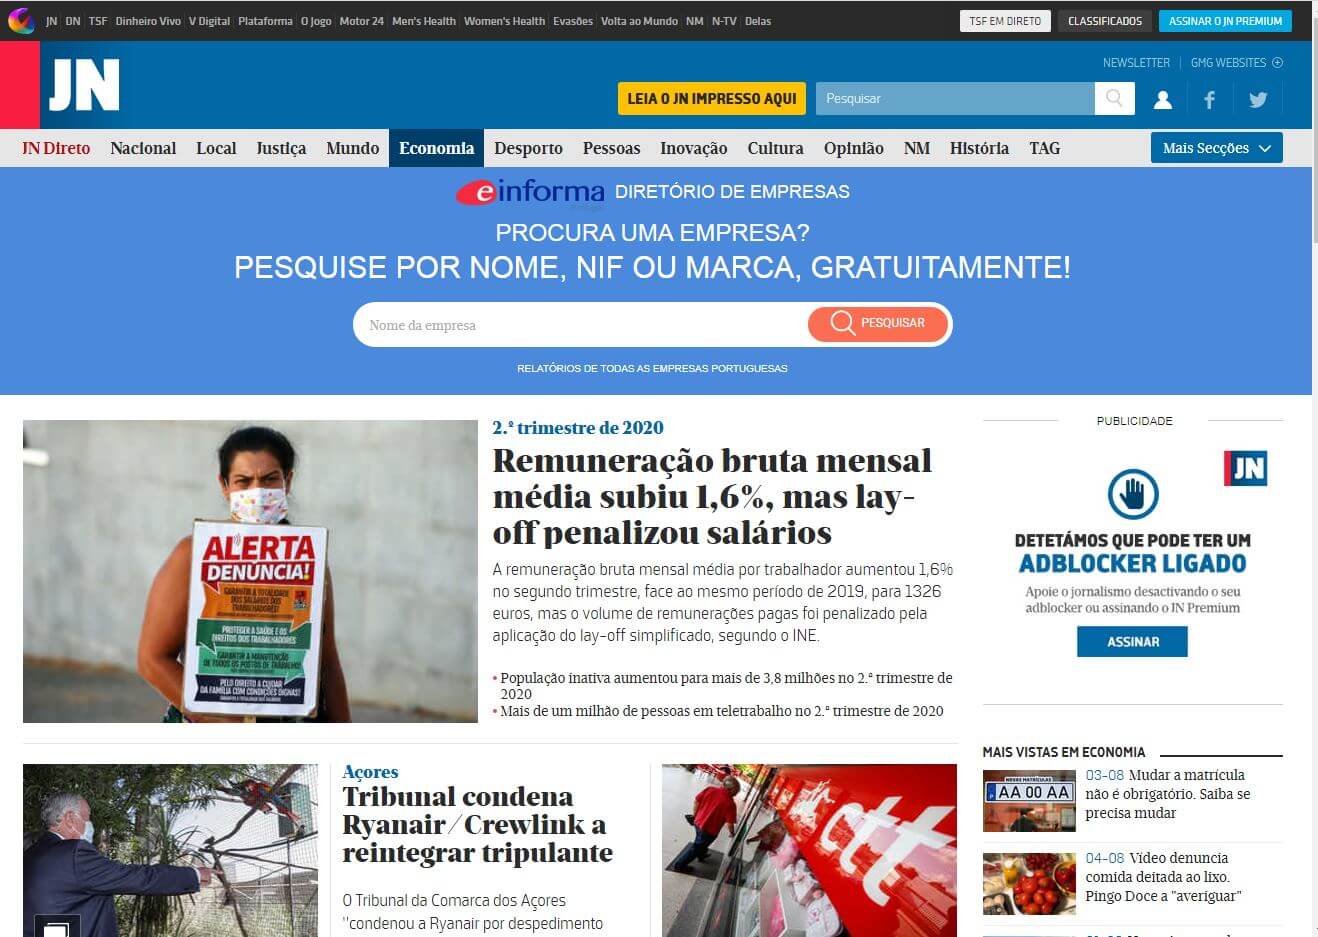 periodicos de portugal 23 jornal de noticias website